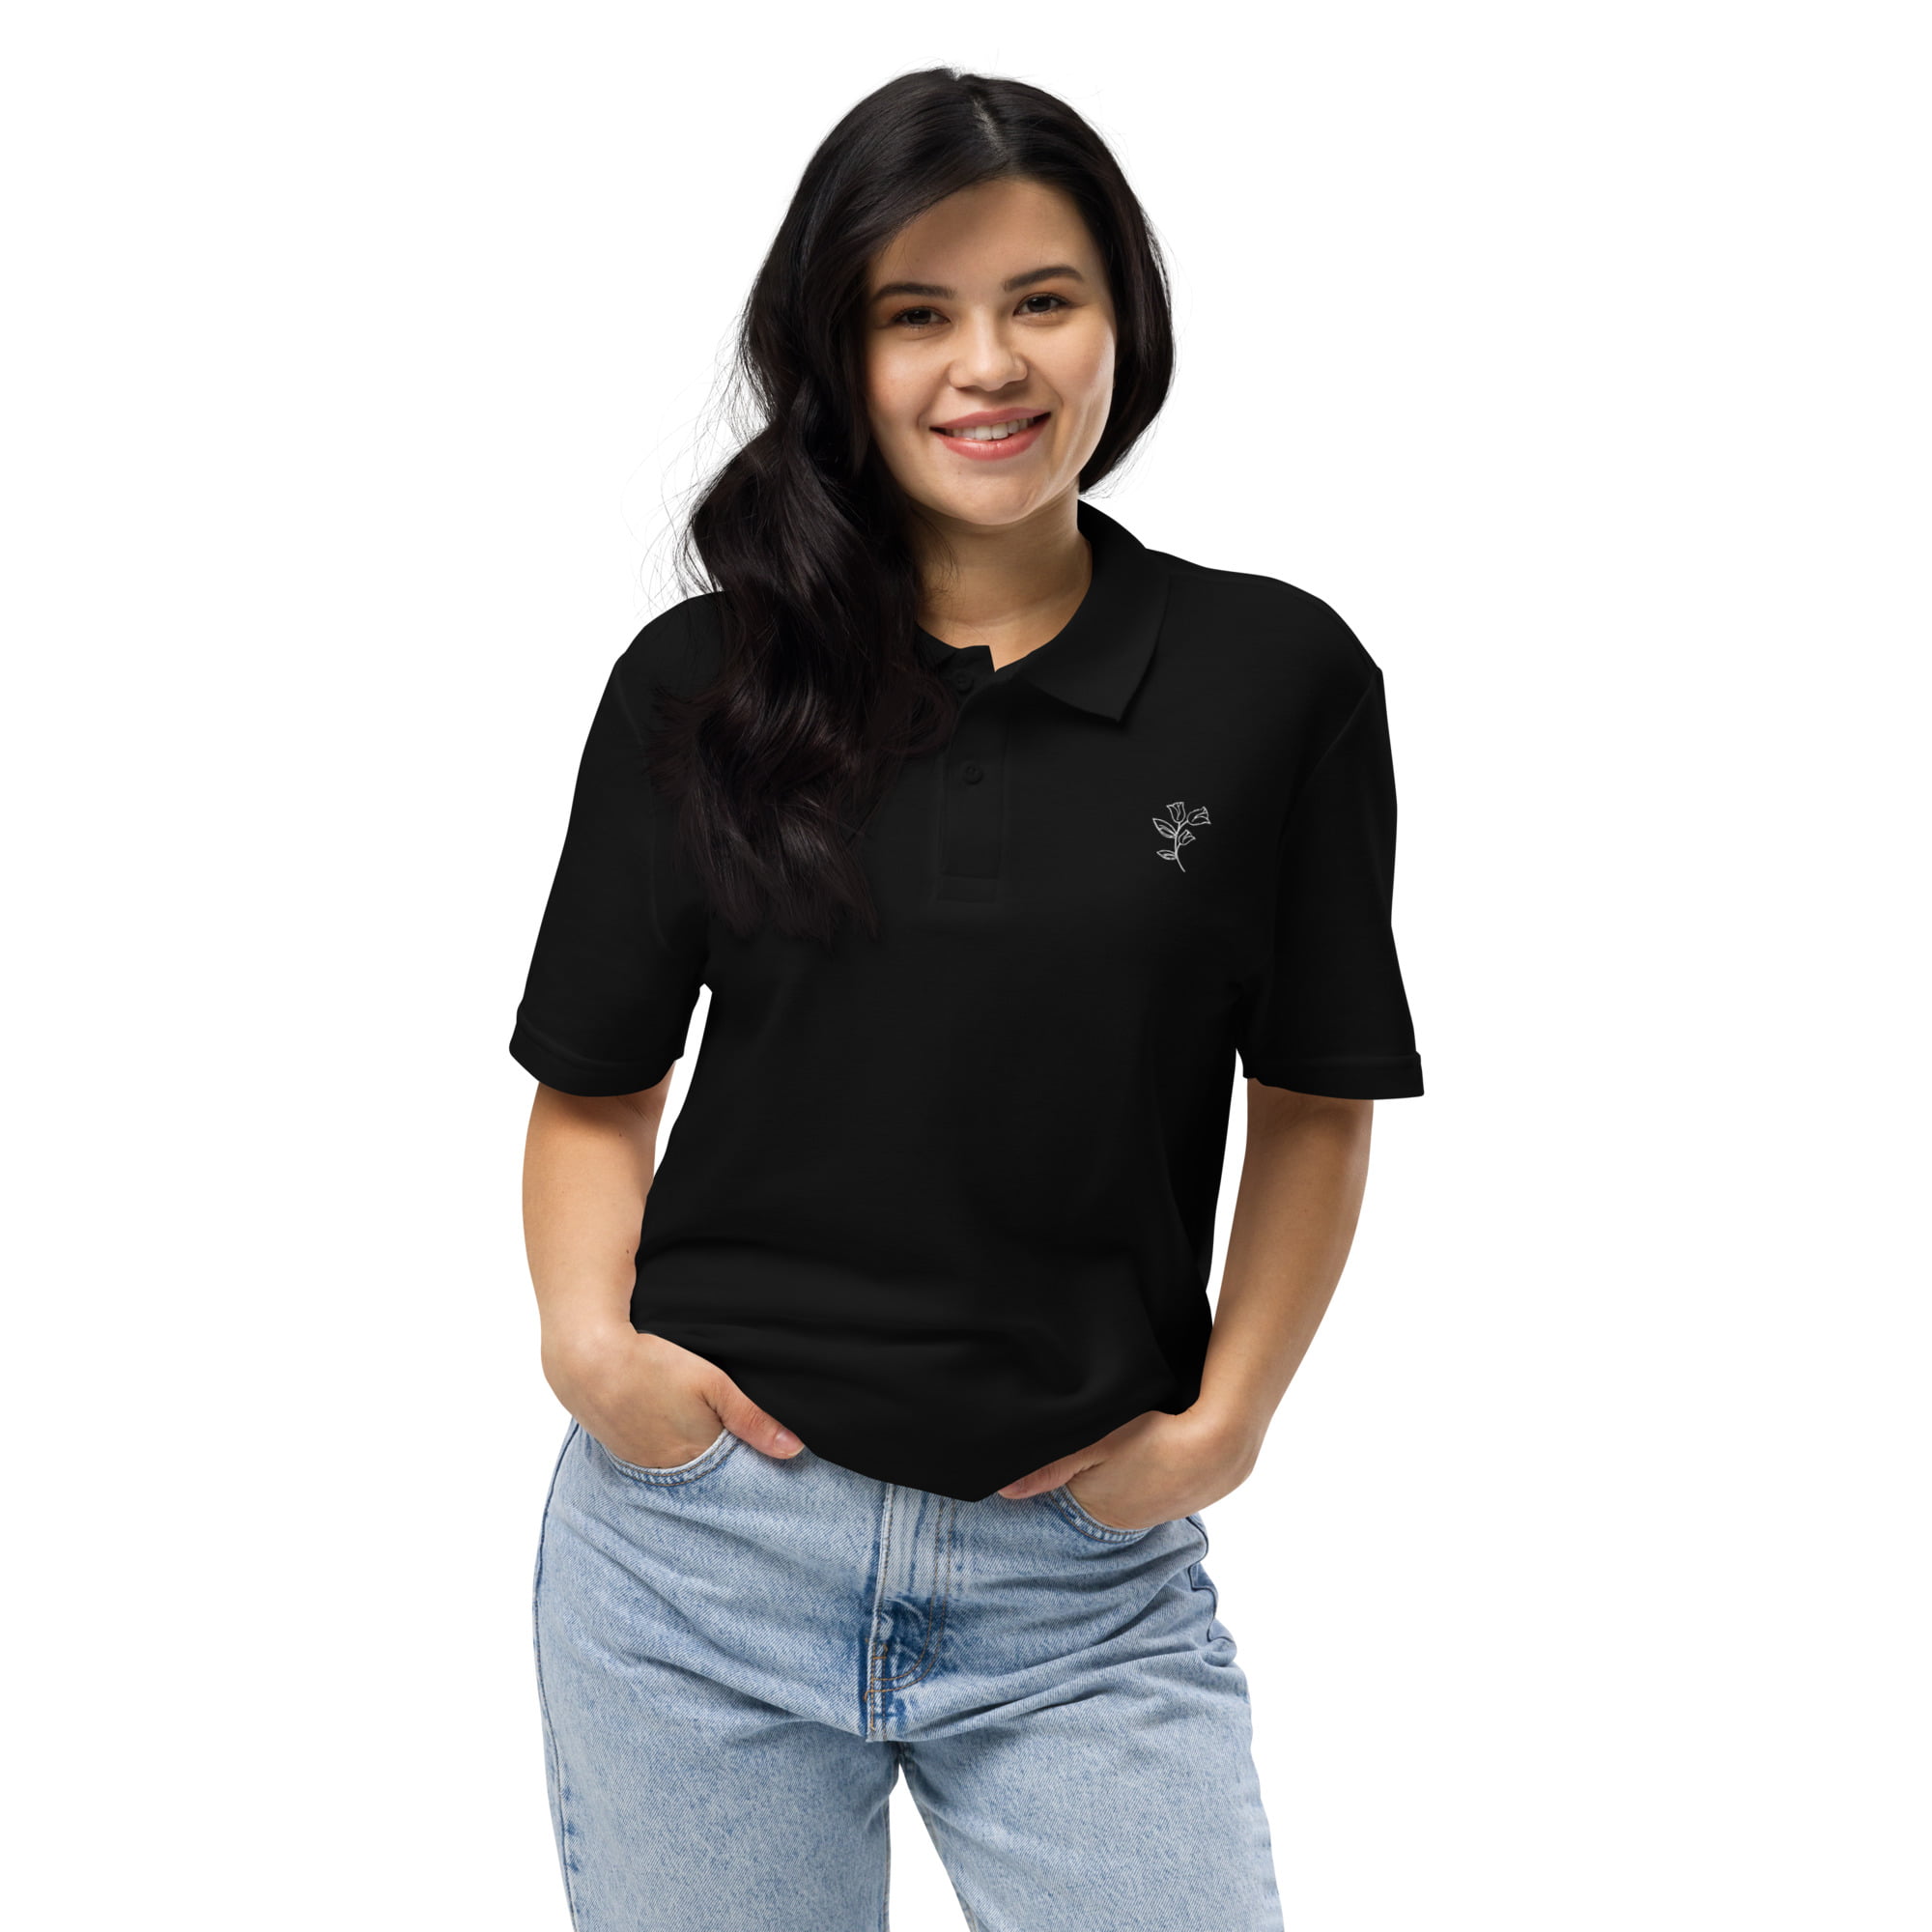 unisex pique polo shirt black front 6475bb50d5986